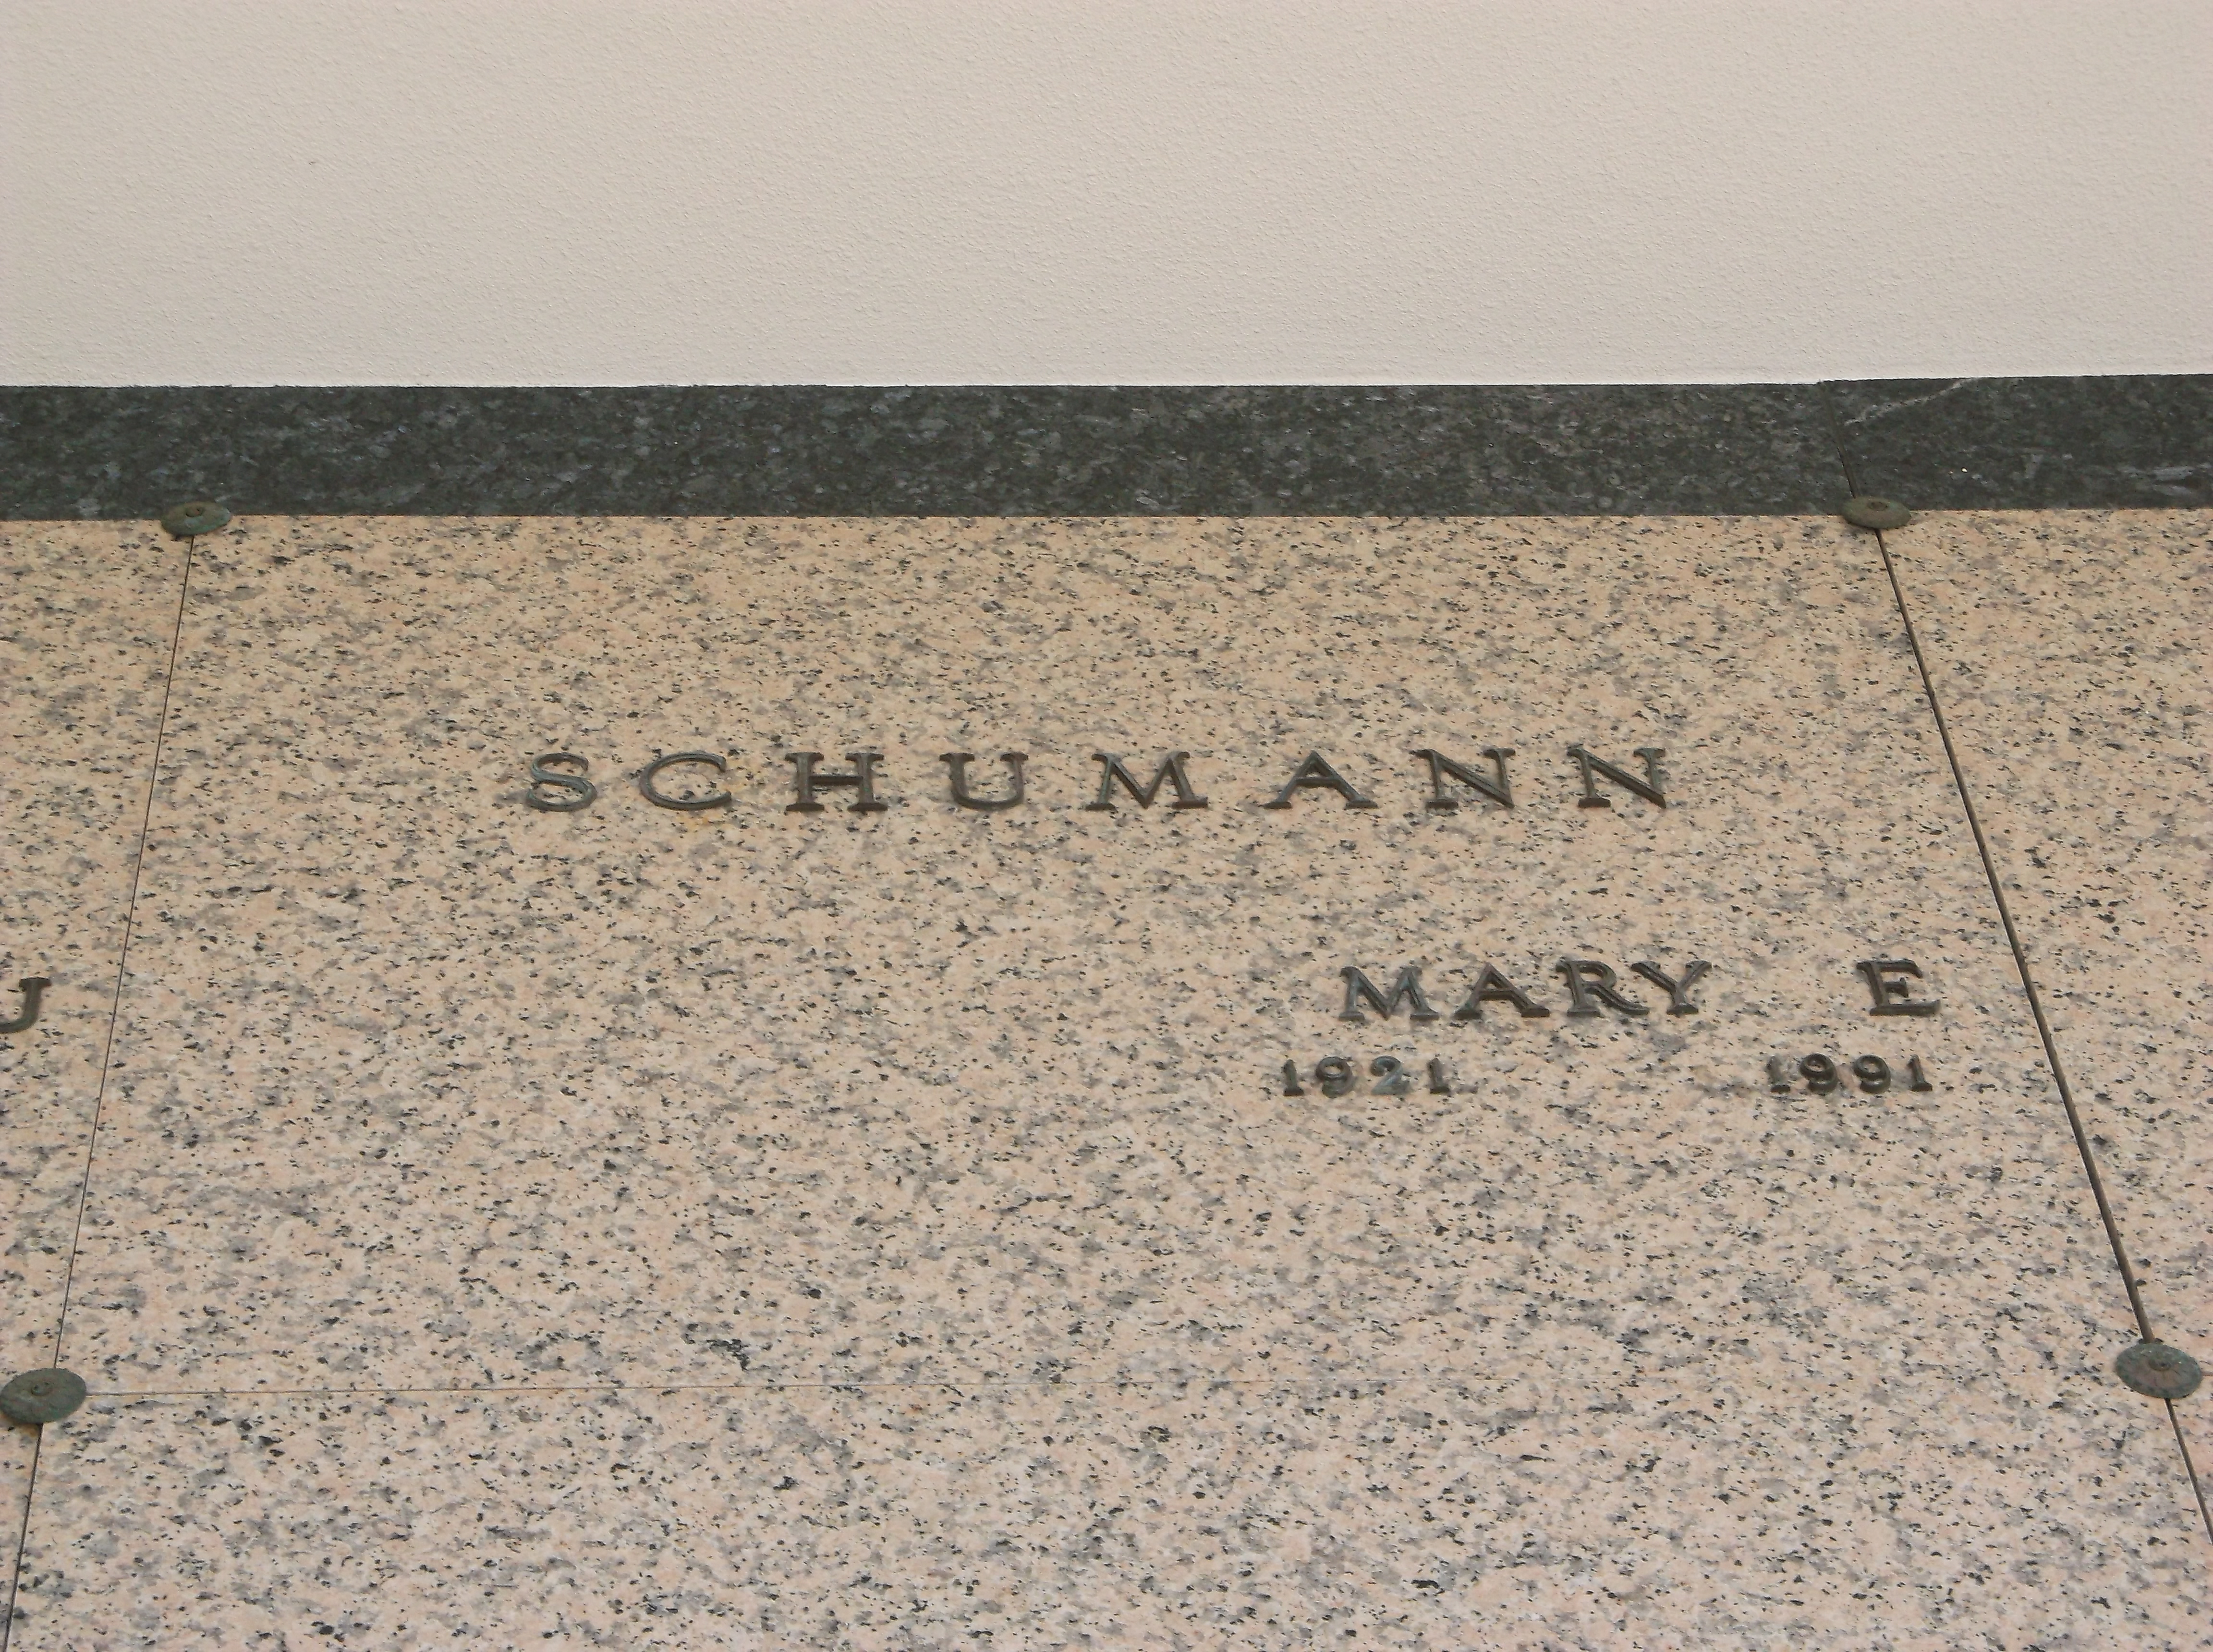 Mary E Schumann